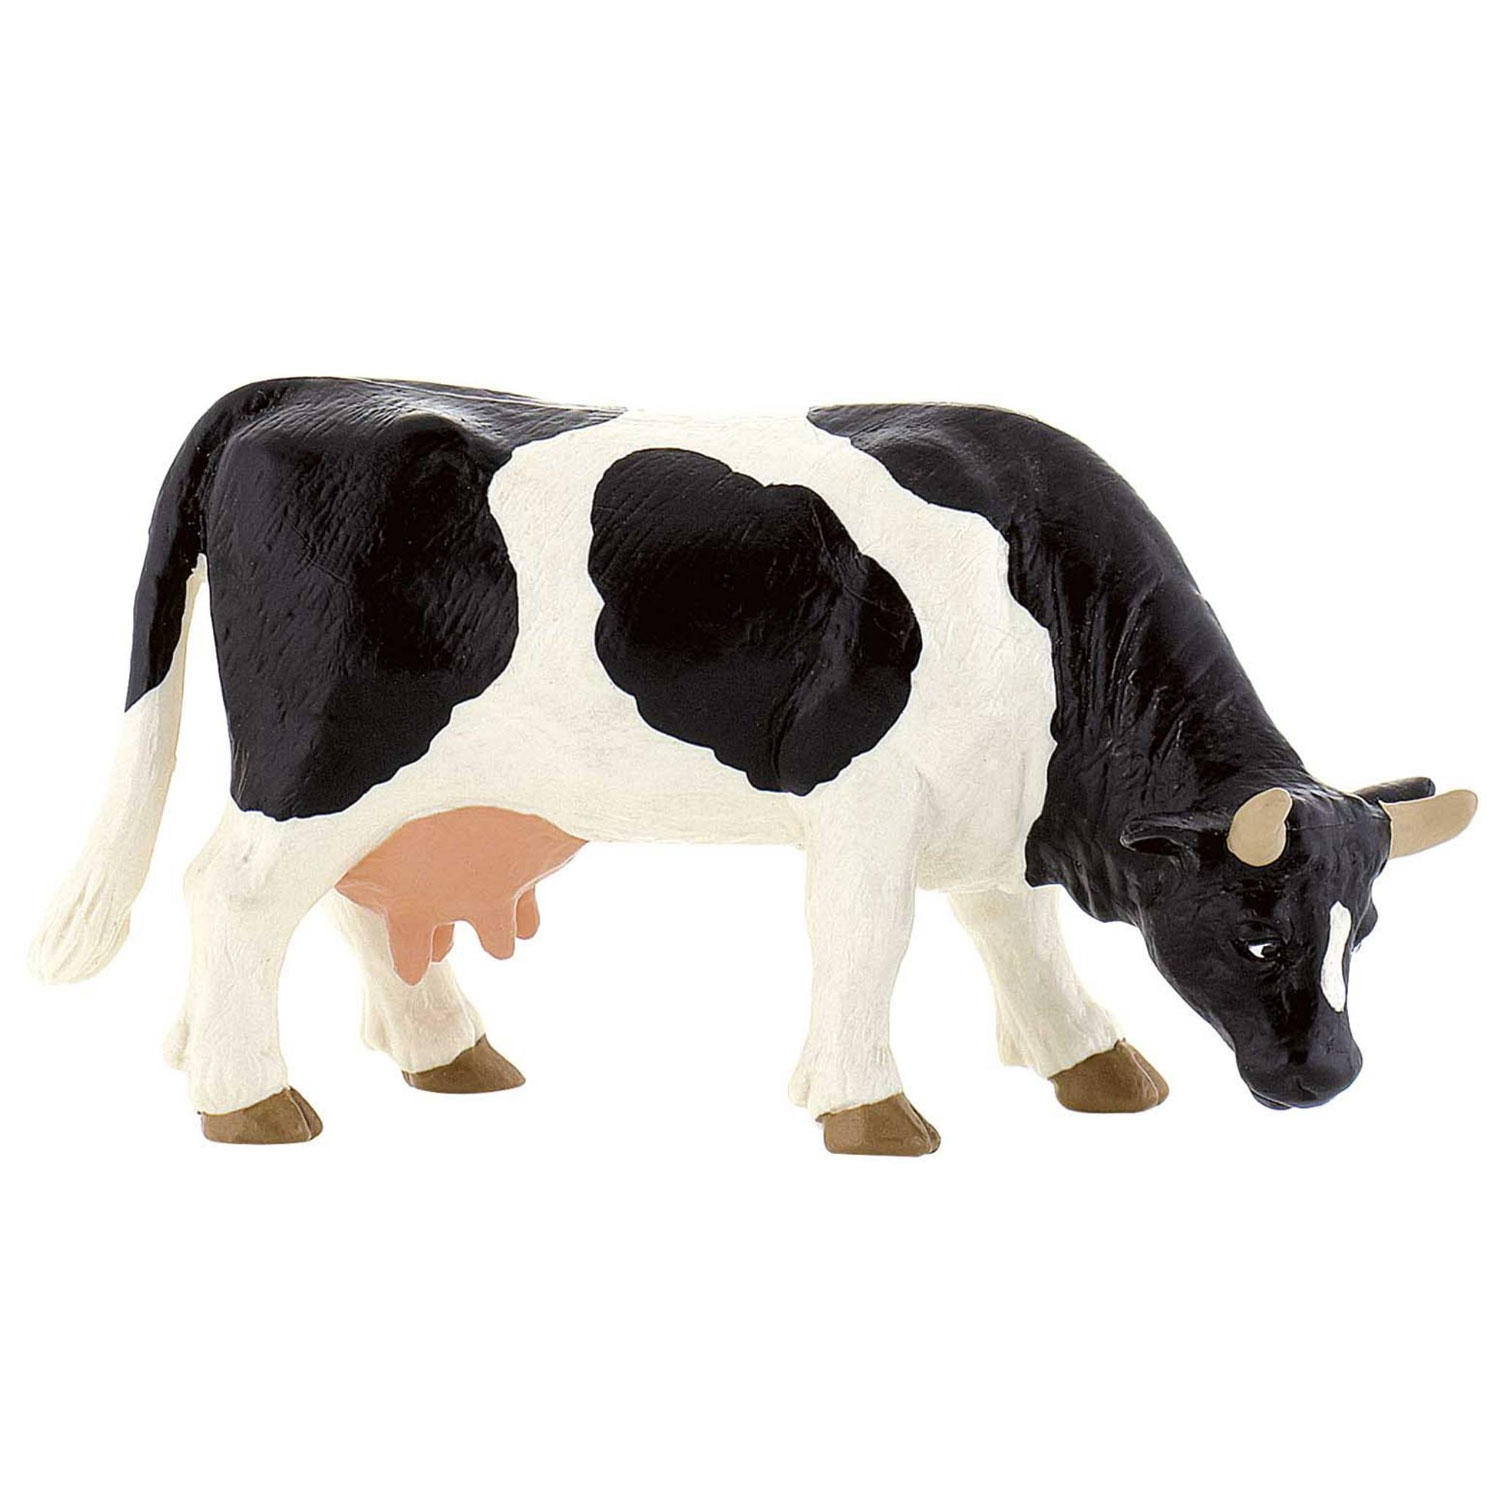 Figurine vache noire et blanche